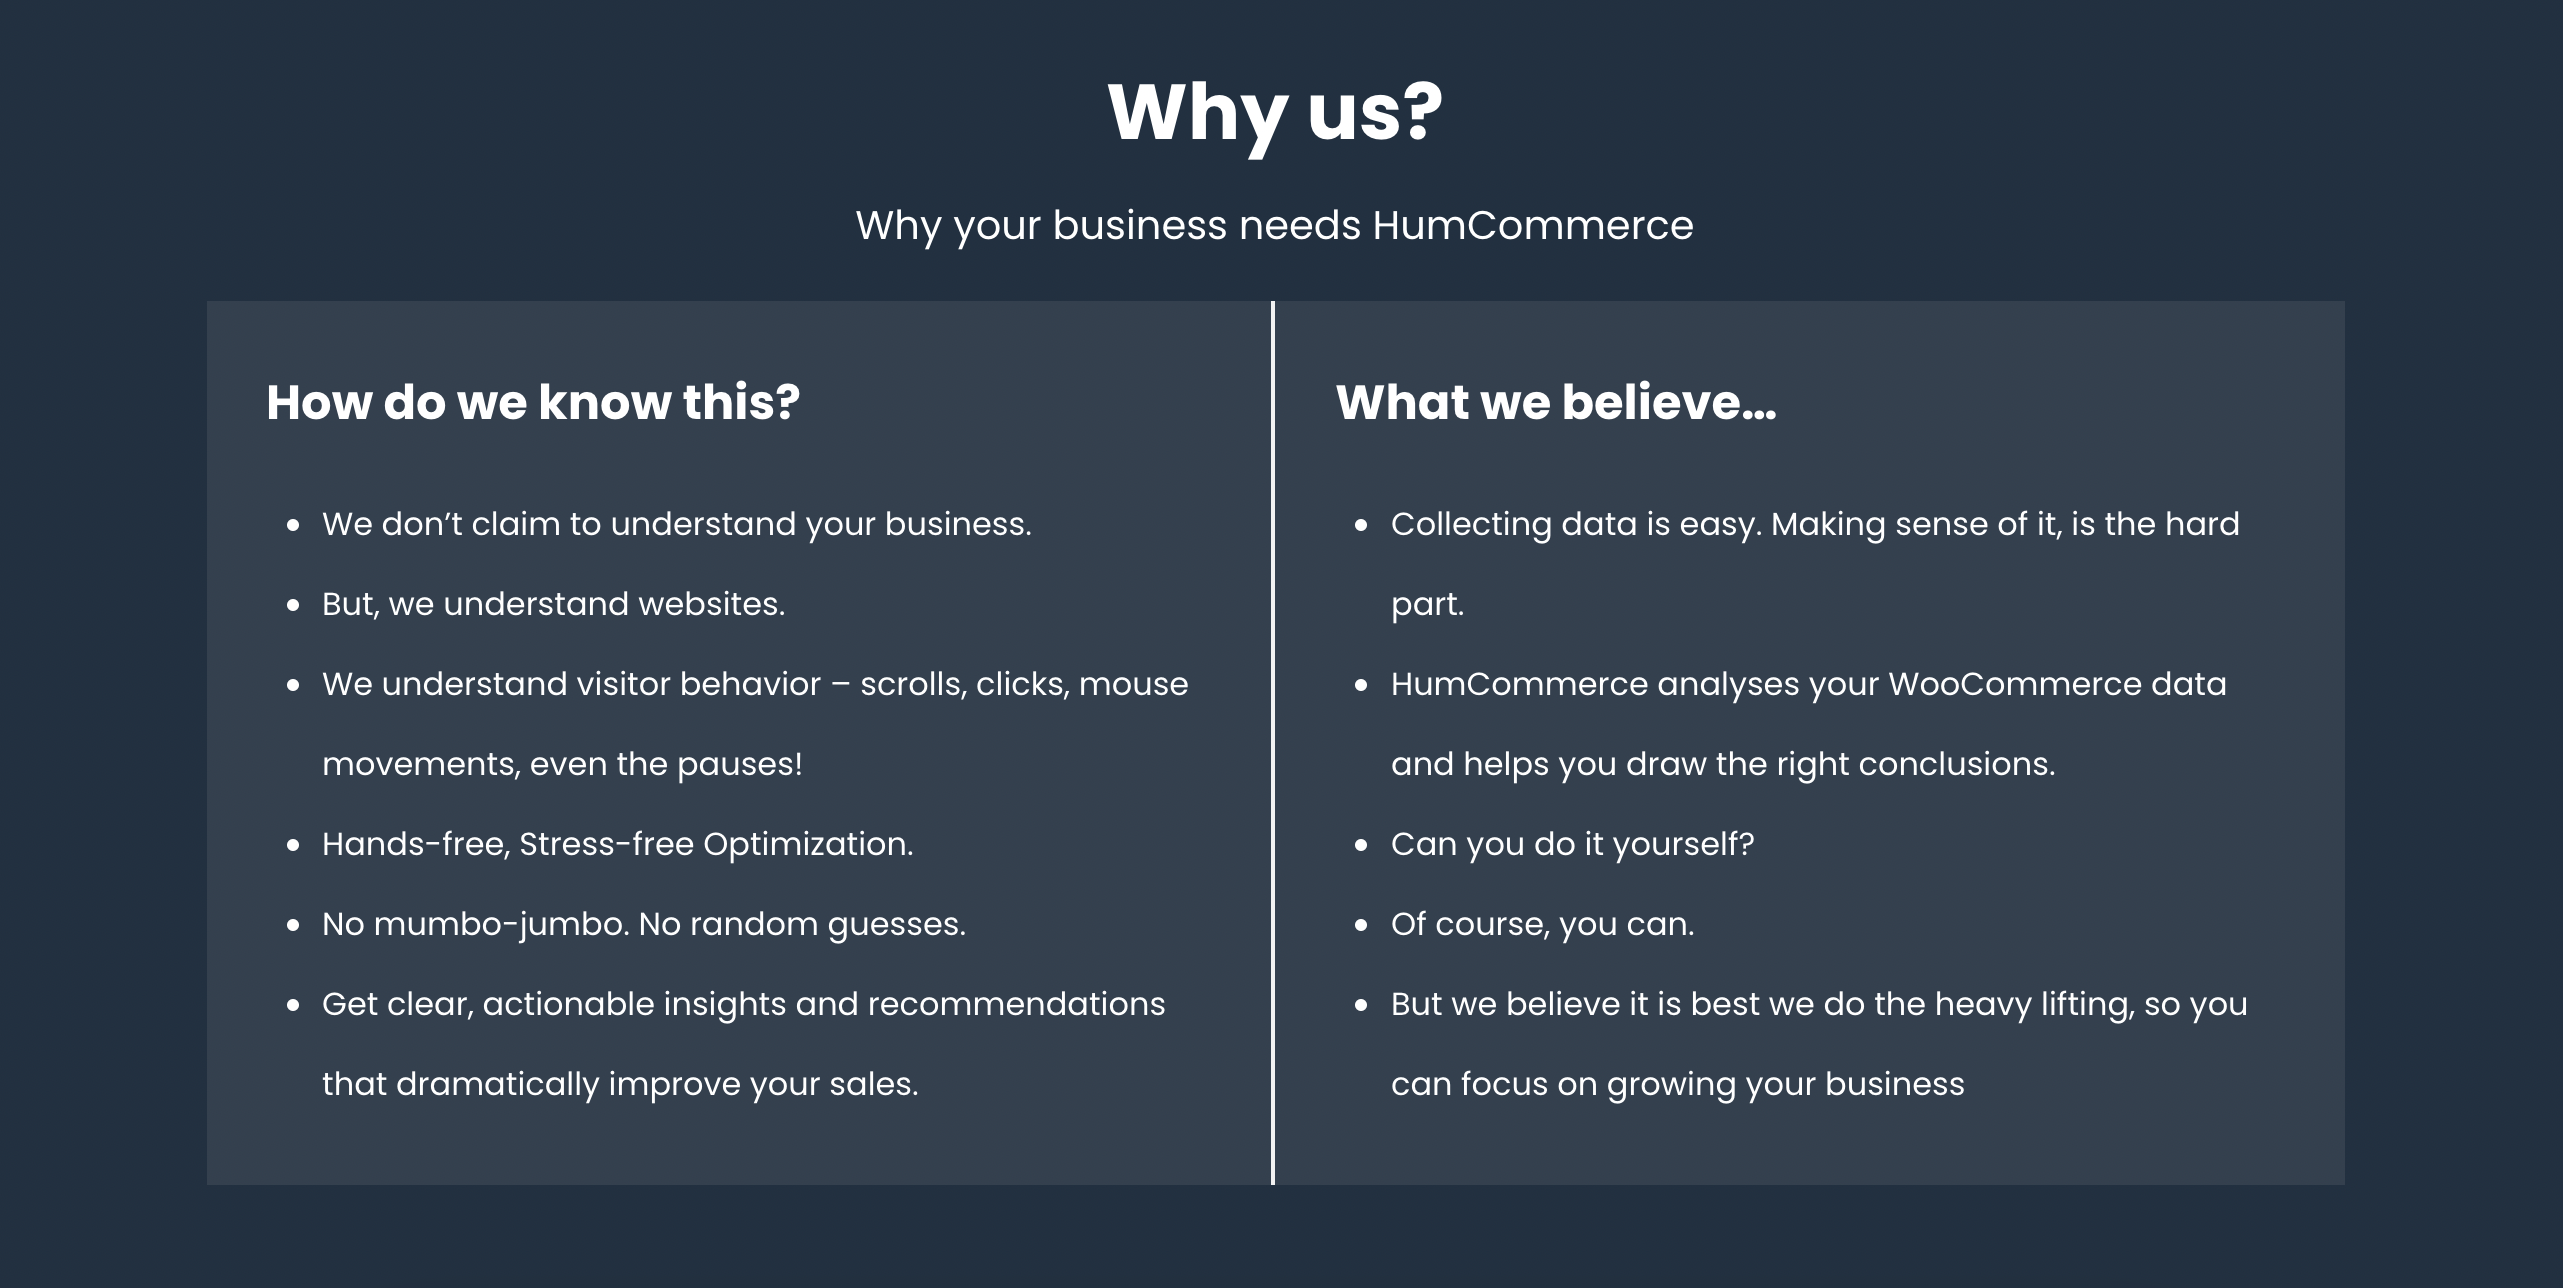 Why HumCommerce